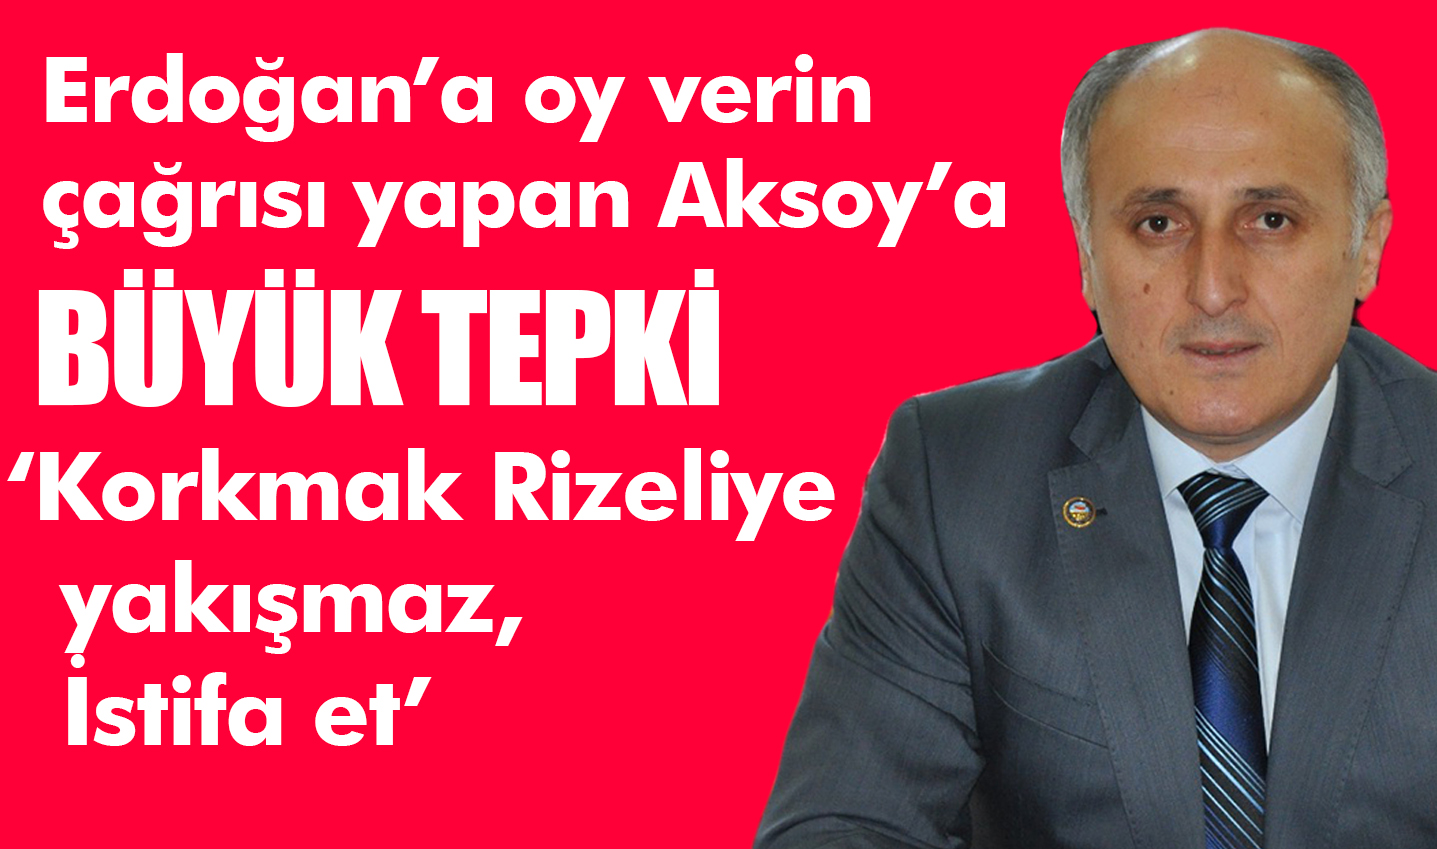 Erdoğan’a oy verin diyen Aksoy’a büyük tepki: “Korkmak Rizeliye yakışmaz, istifa et”